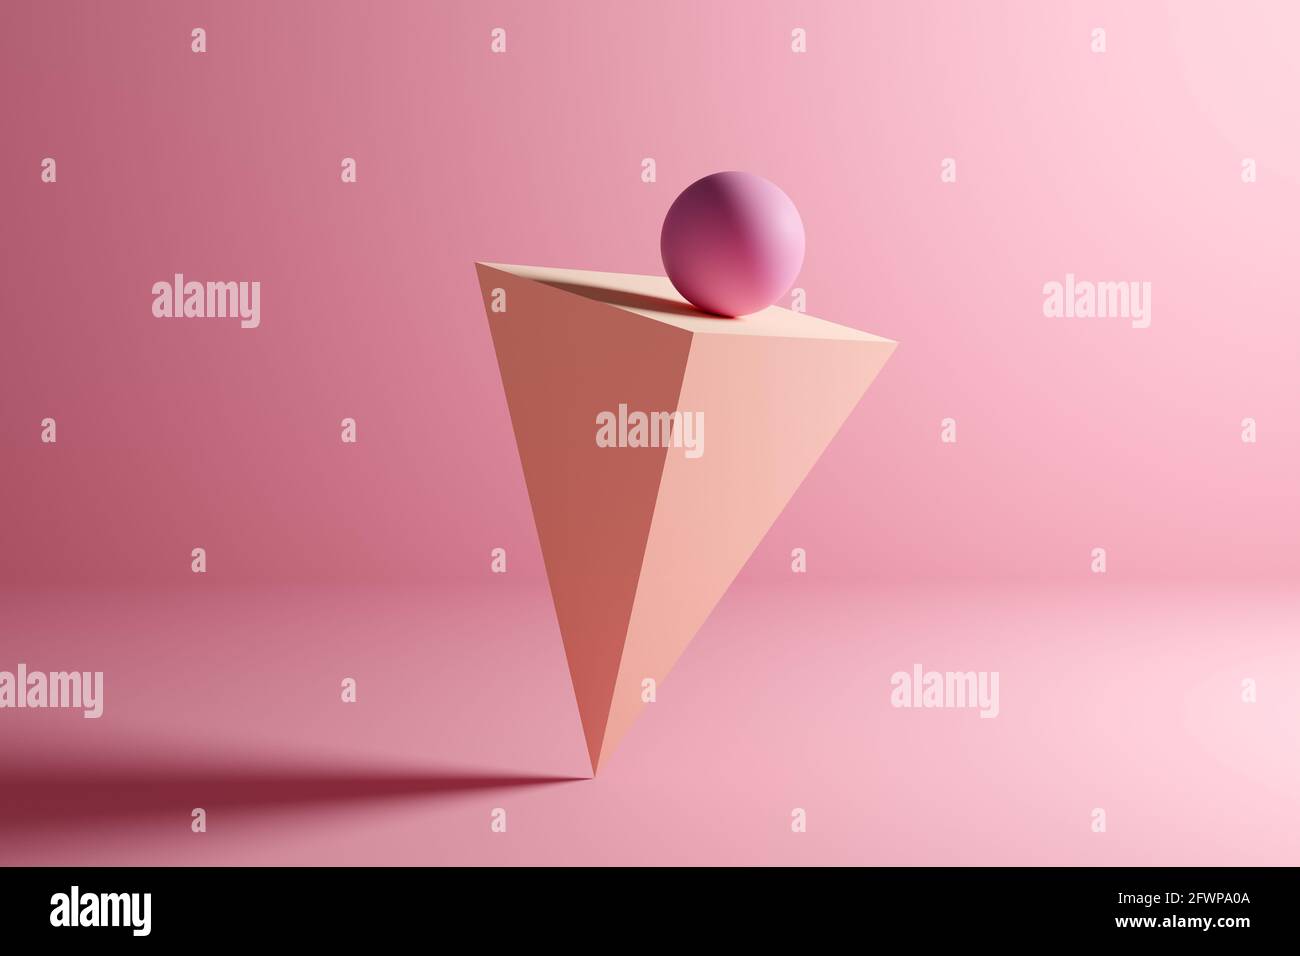 Kugel auf Balance auf einer umgekehrten Pyramidenprisma geometrische Form auf rosa Hintergrund. Abstrakte 3D-Hintergrunddarstellung. Stockfoto